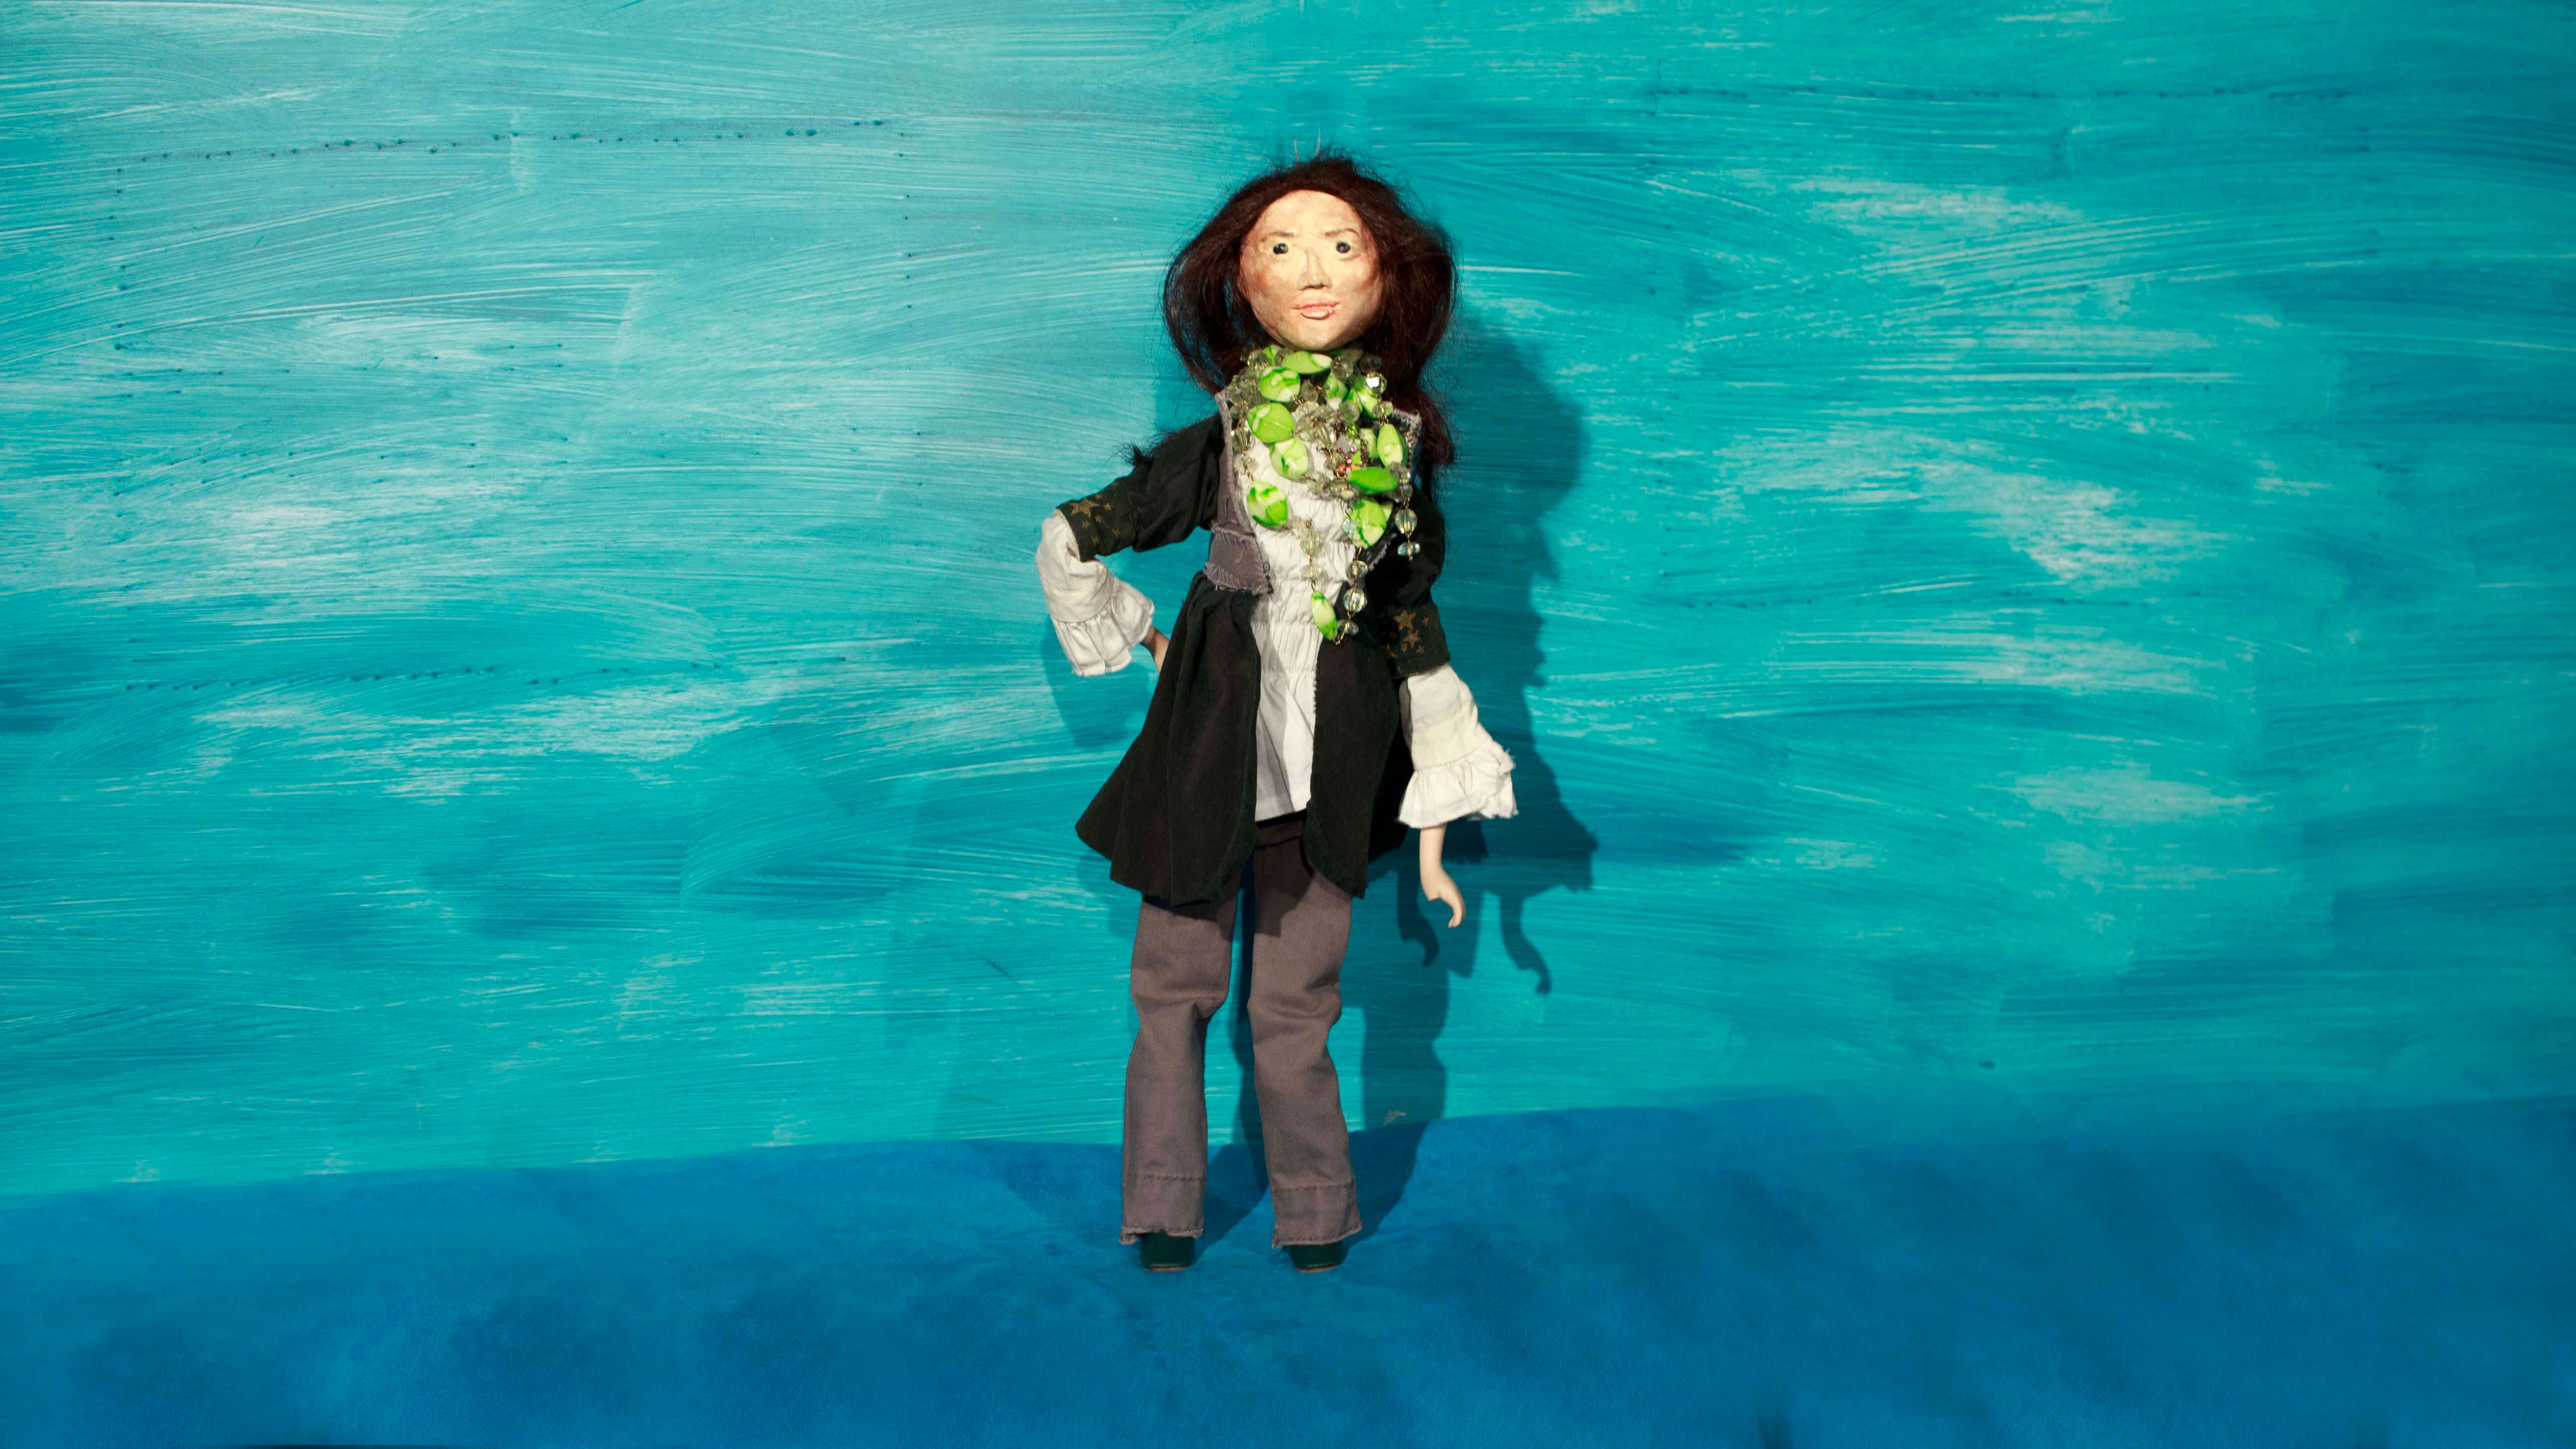 zdjęcie przedstawiające stojącą lalkę przedstawiającą kobietę w ciemnych długich włosach, o ciemnych oczas, ubraną w białą koszulę, ciemny sweter, szare spodnie i czarne buty, z zielonymi i przezroczystymi koralami wokół szyi, prawą ręką podpiera się pod bok, niebieskie tło